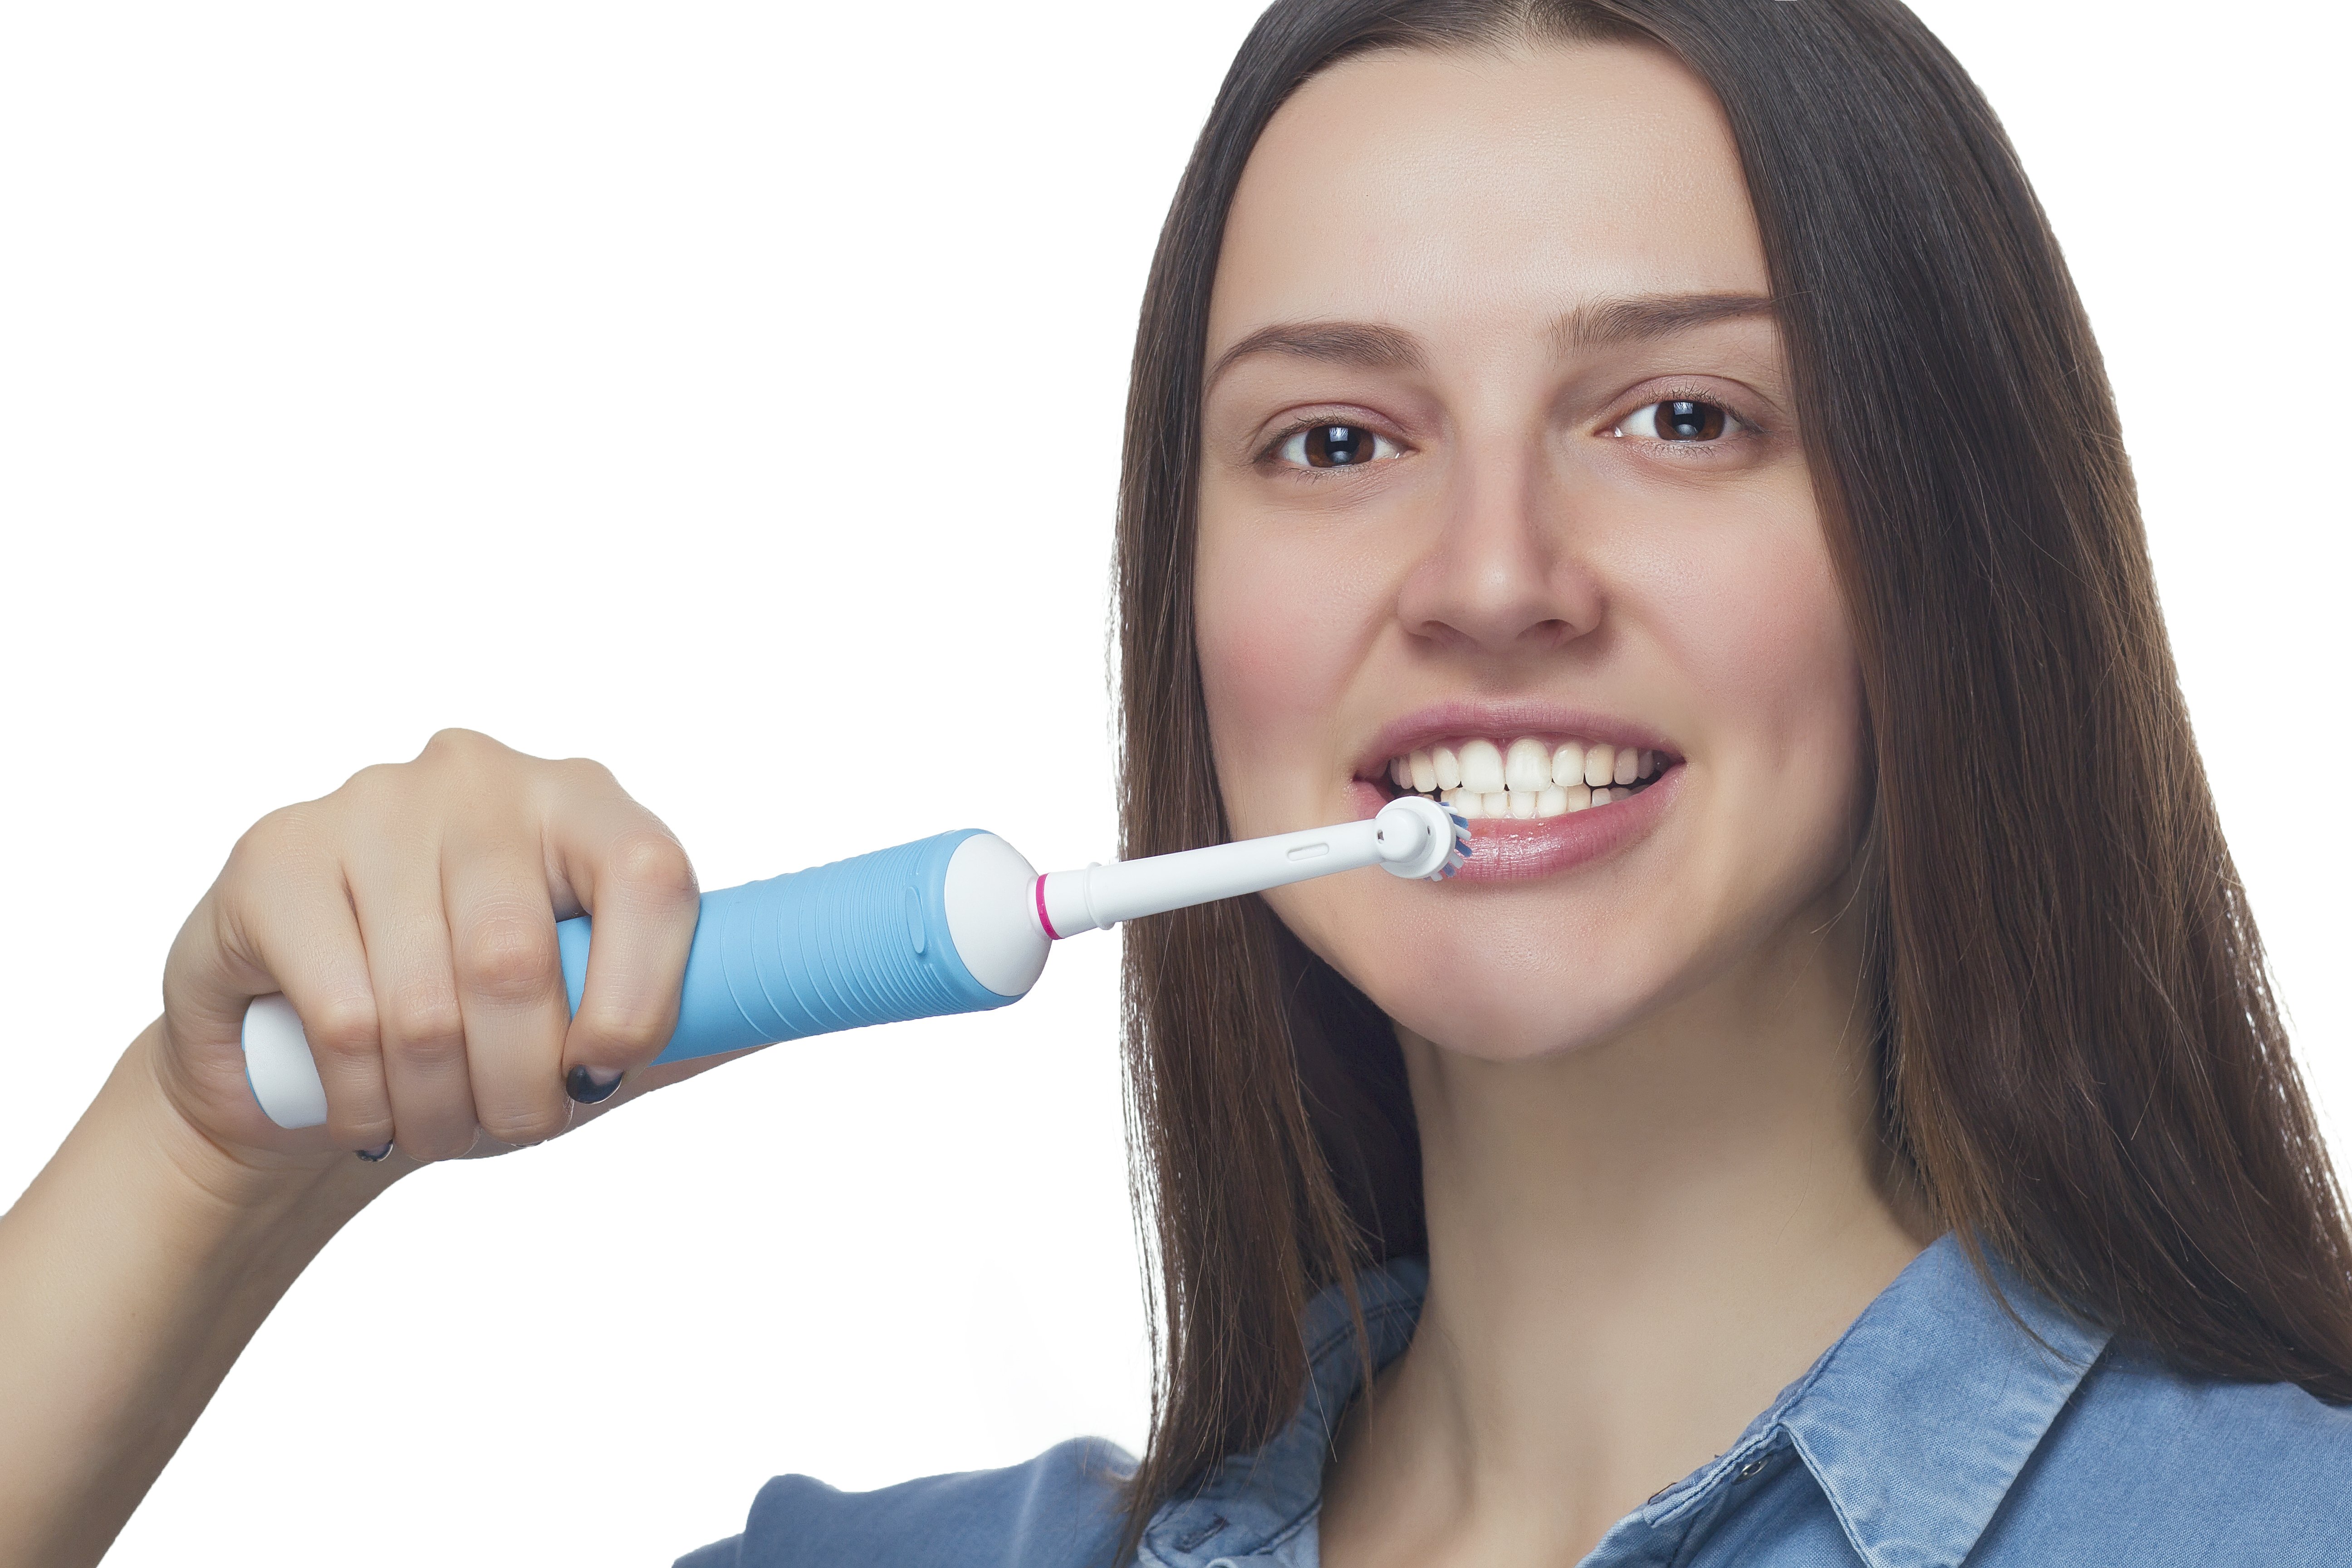 Електрична зубна щітка Oral-b Vitality Cross Action - фото 8